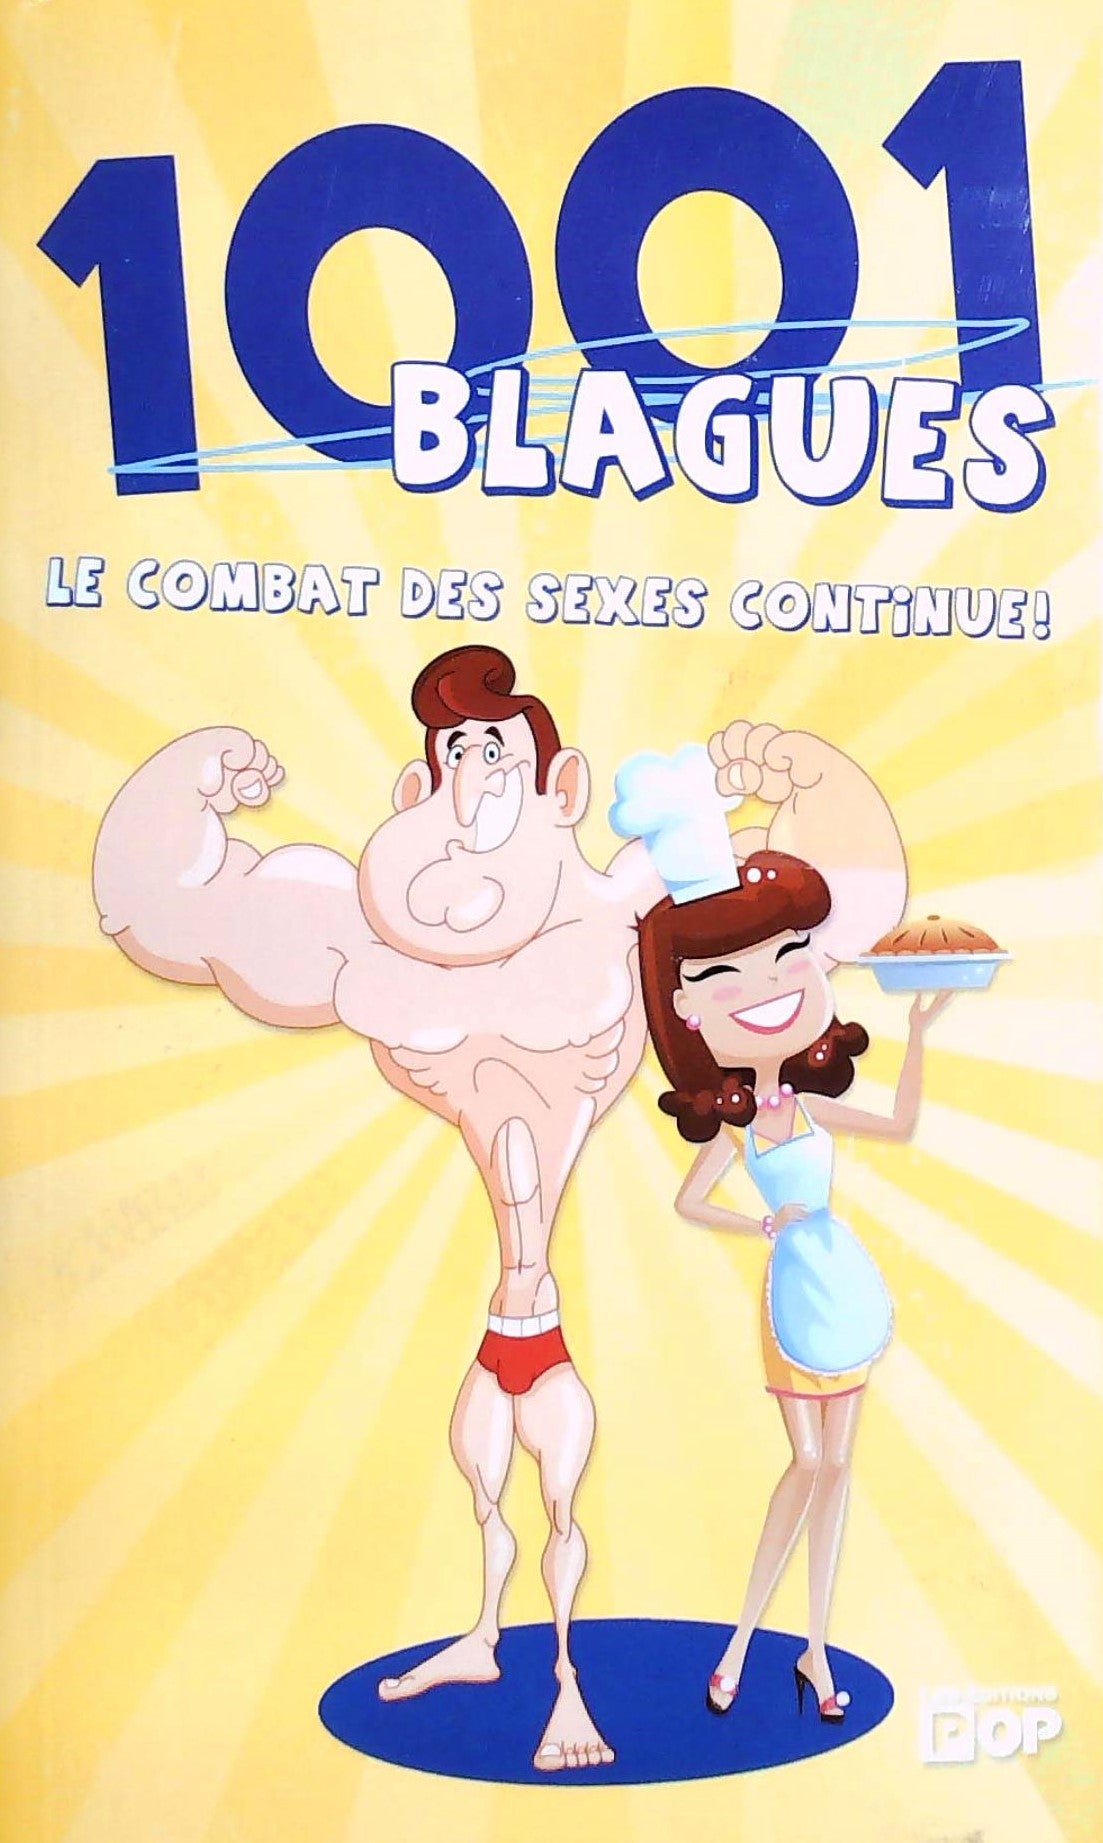 Livre ISBN  1001 Blagues : Le combat des sexes continue!